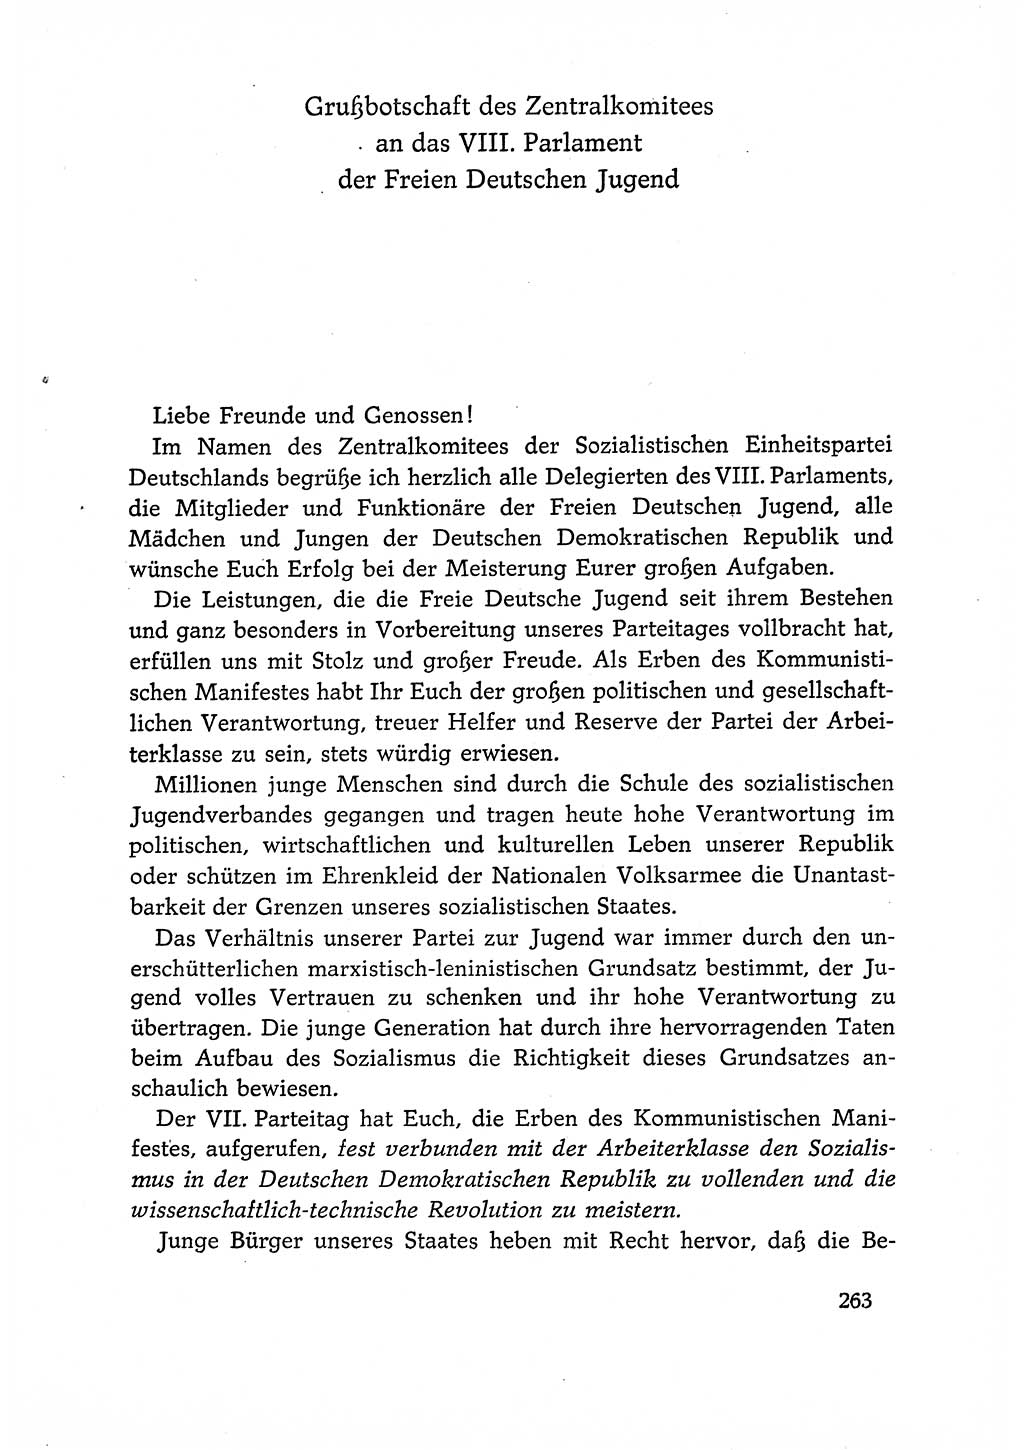 Dokumente der Sozialistischen Einheitspartei Deutschlands (SED) [Deutsche Demokratische Republik (DDR)] 1966-1967, Seite 263 (Dok. SED DDR 1966-1967, S. 263)